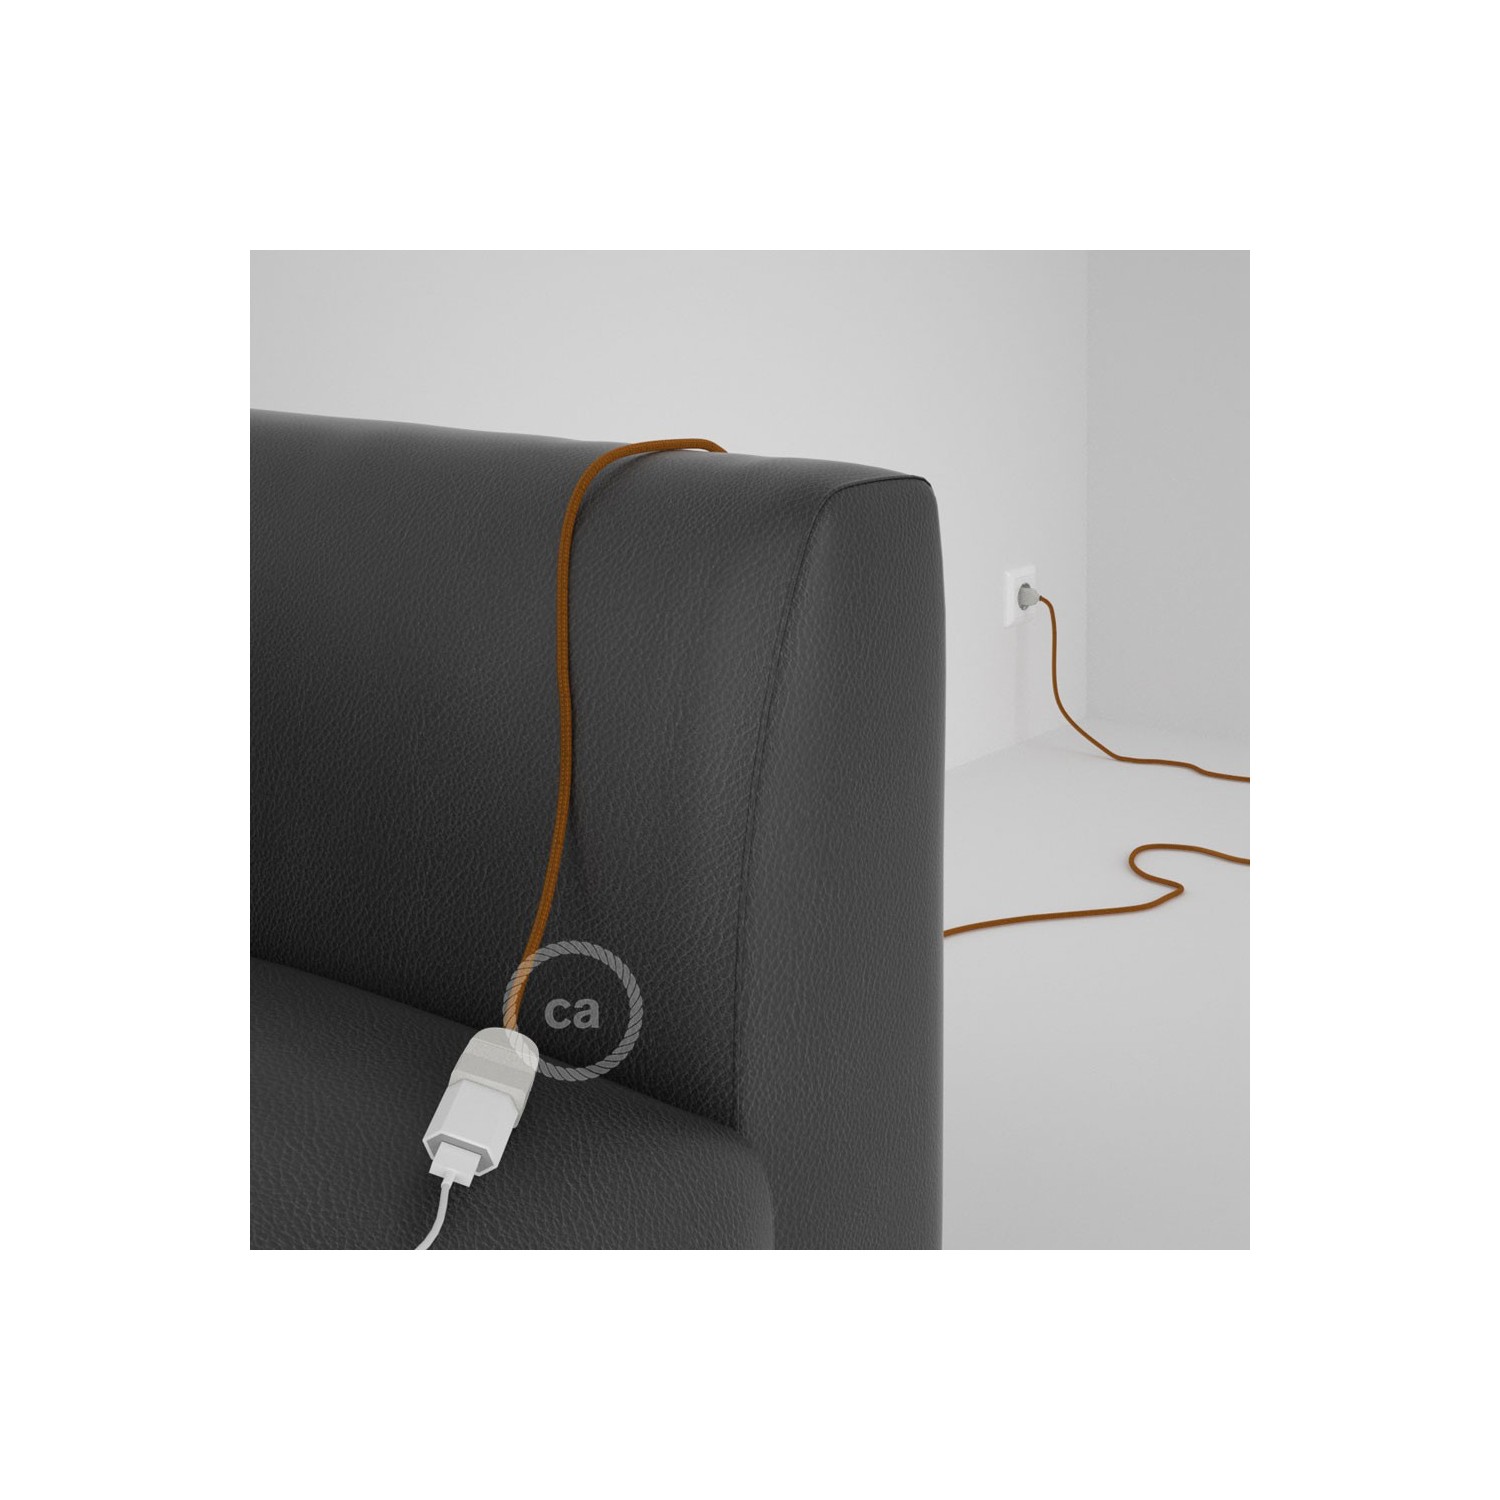 Rallonge électrique avec câble textile RM22 Effet Soie Whiskey 2P 10A Made in Italy.